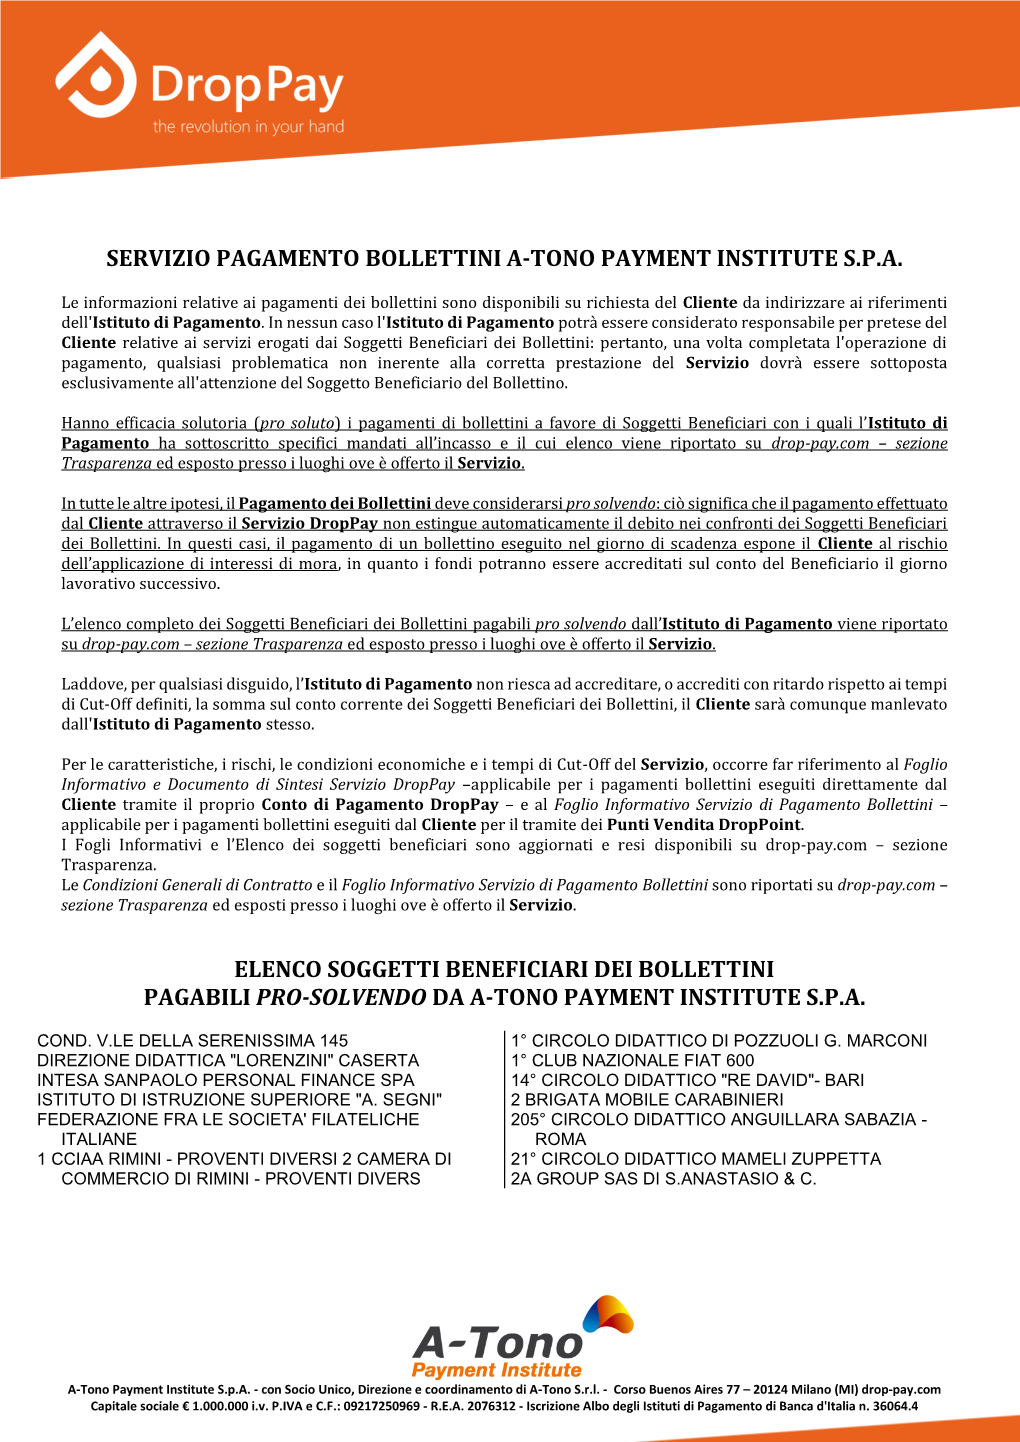 Servizio Pagamento Bollettini A-Tono Payment Institute S.P.A